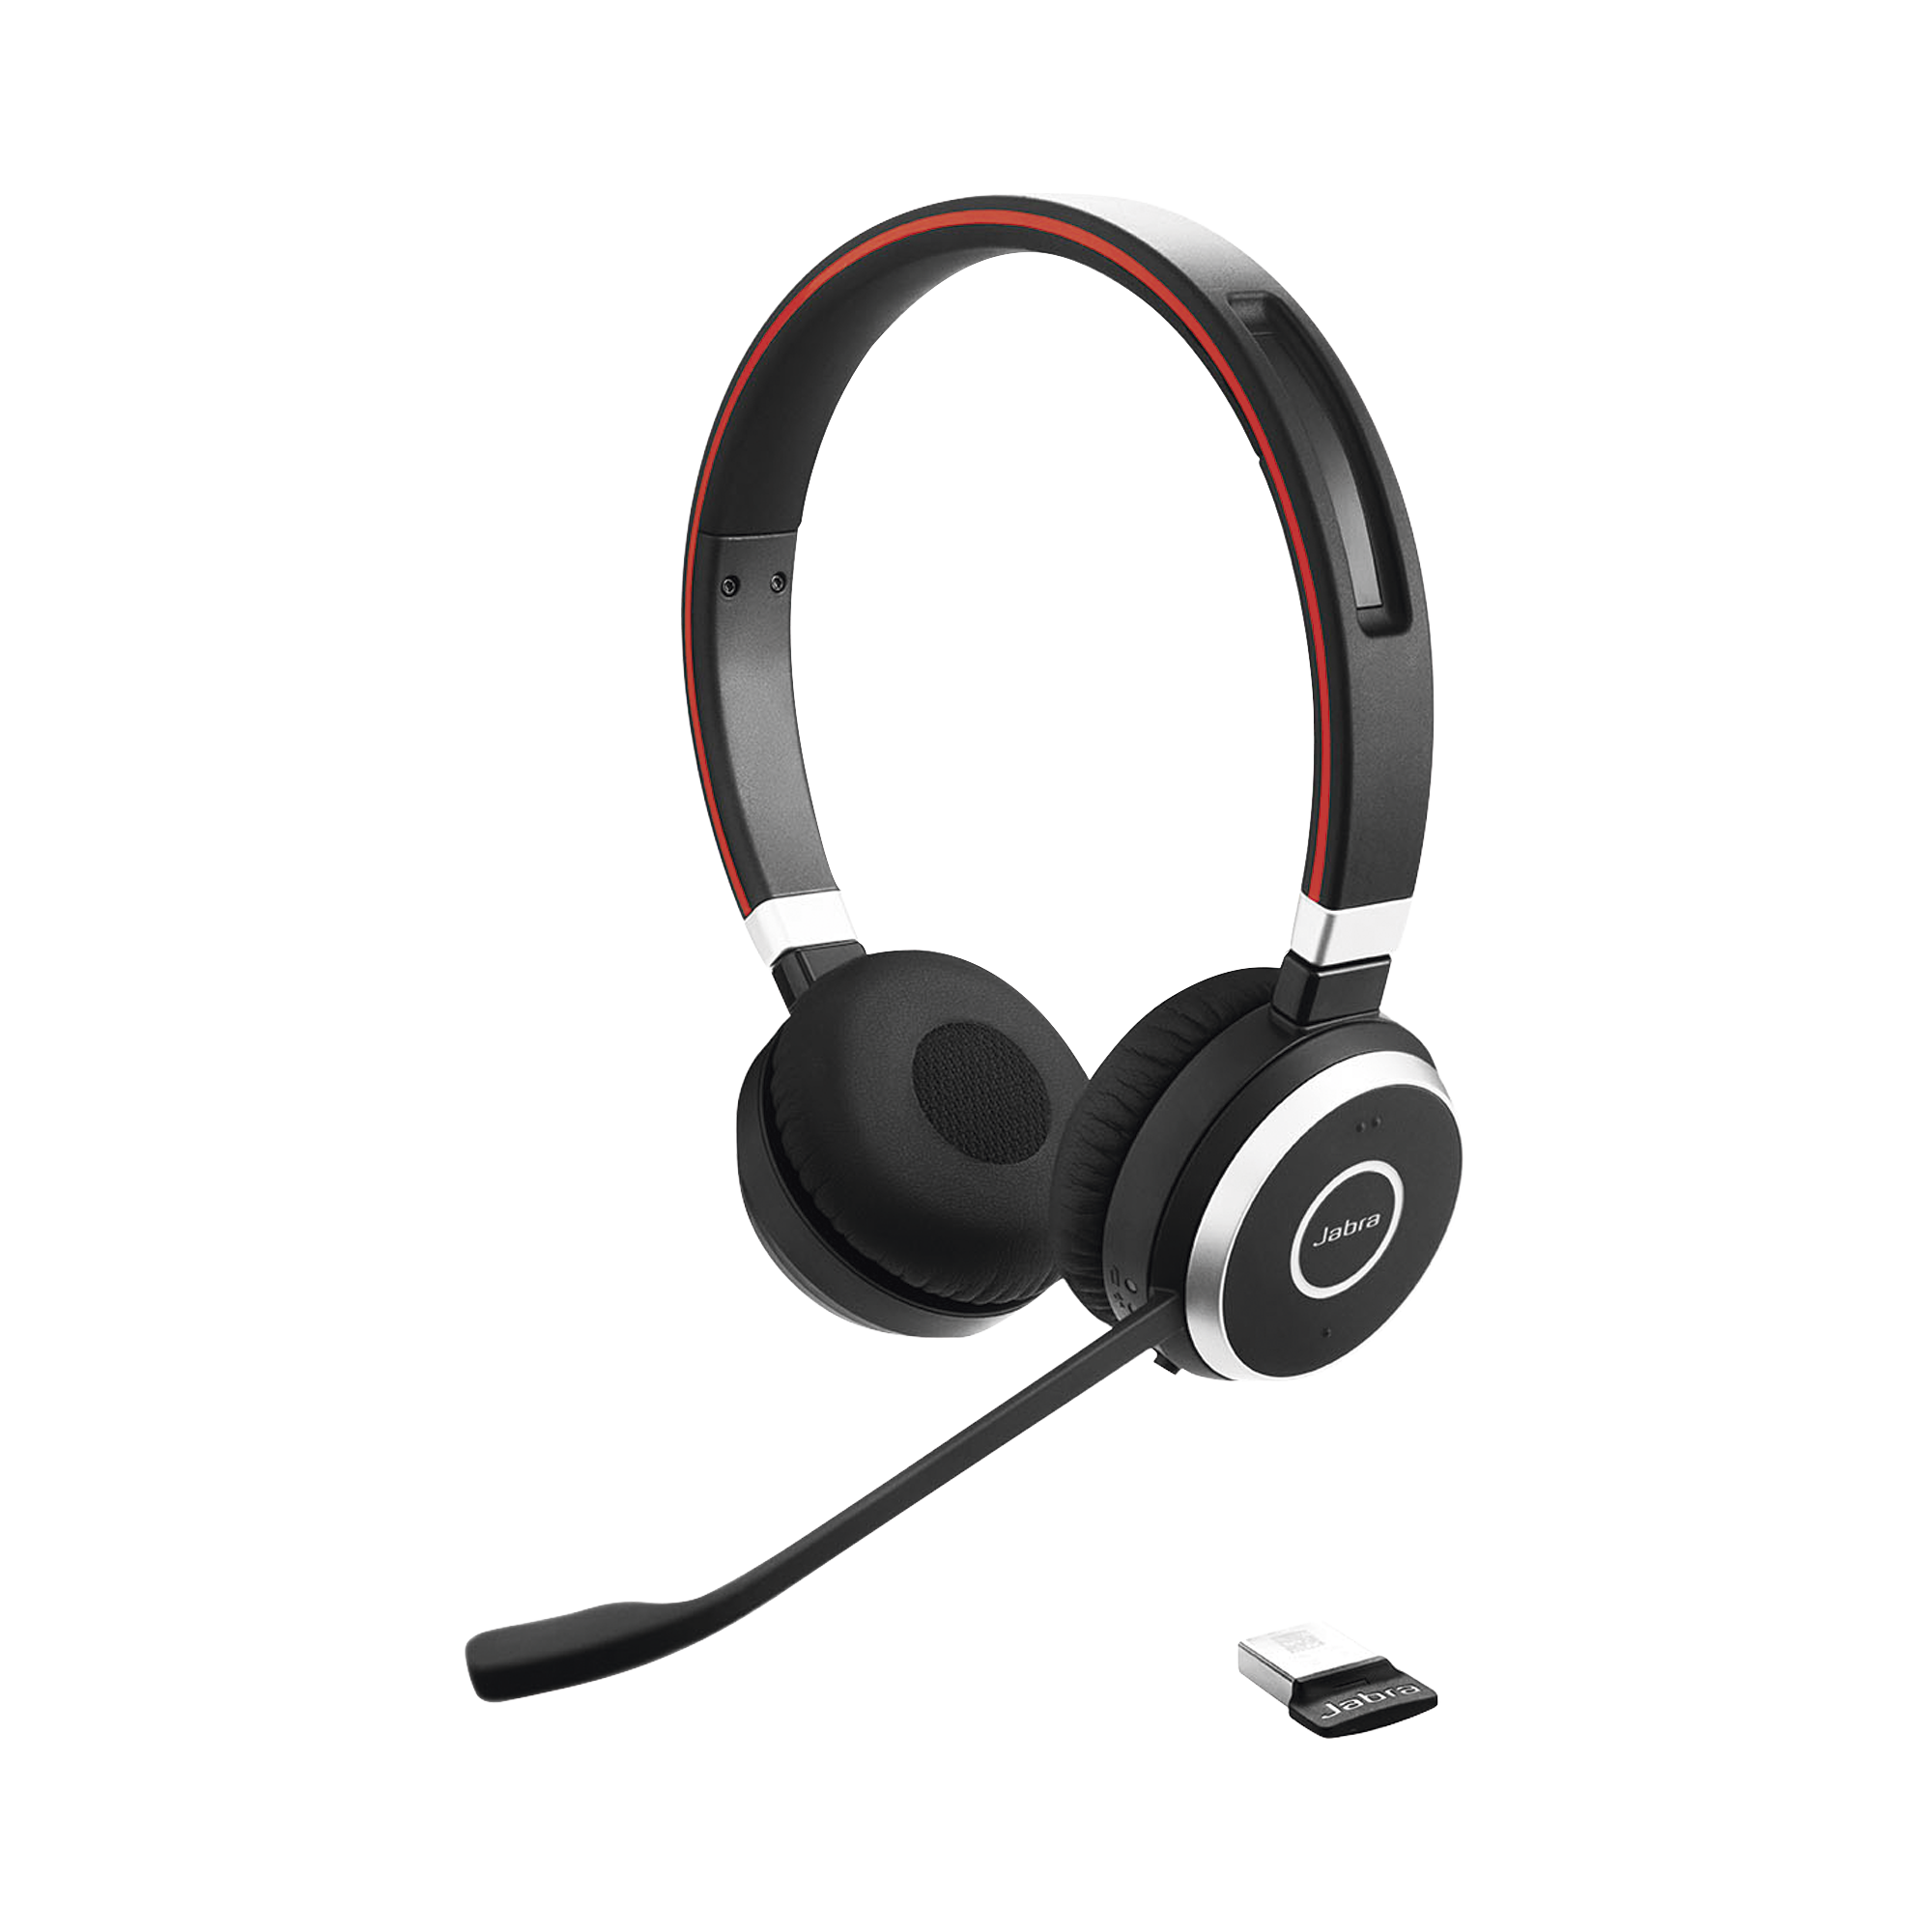 Evolve 65 SE Stereo, auricular profesional con gran calidad para llamadas y música (6599-833-309).